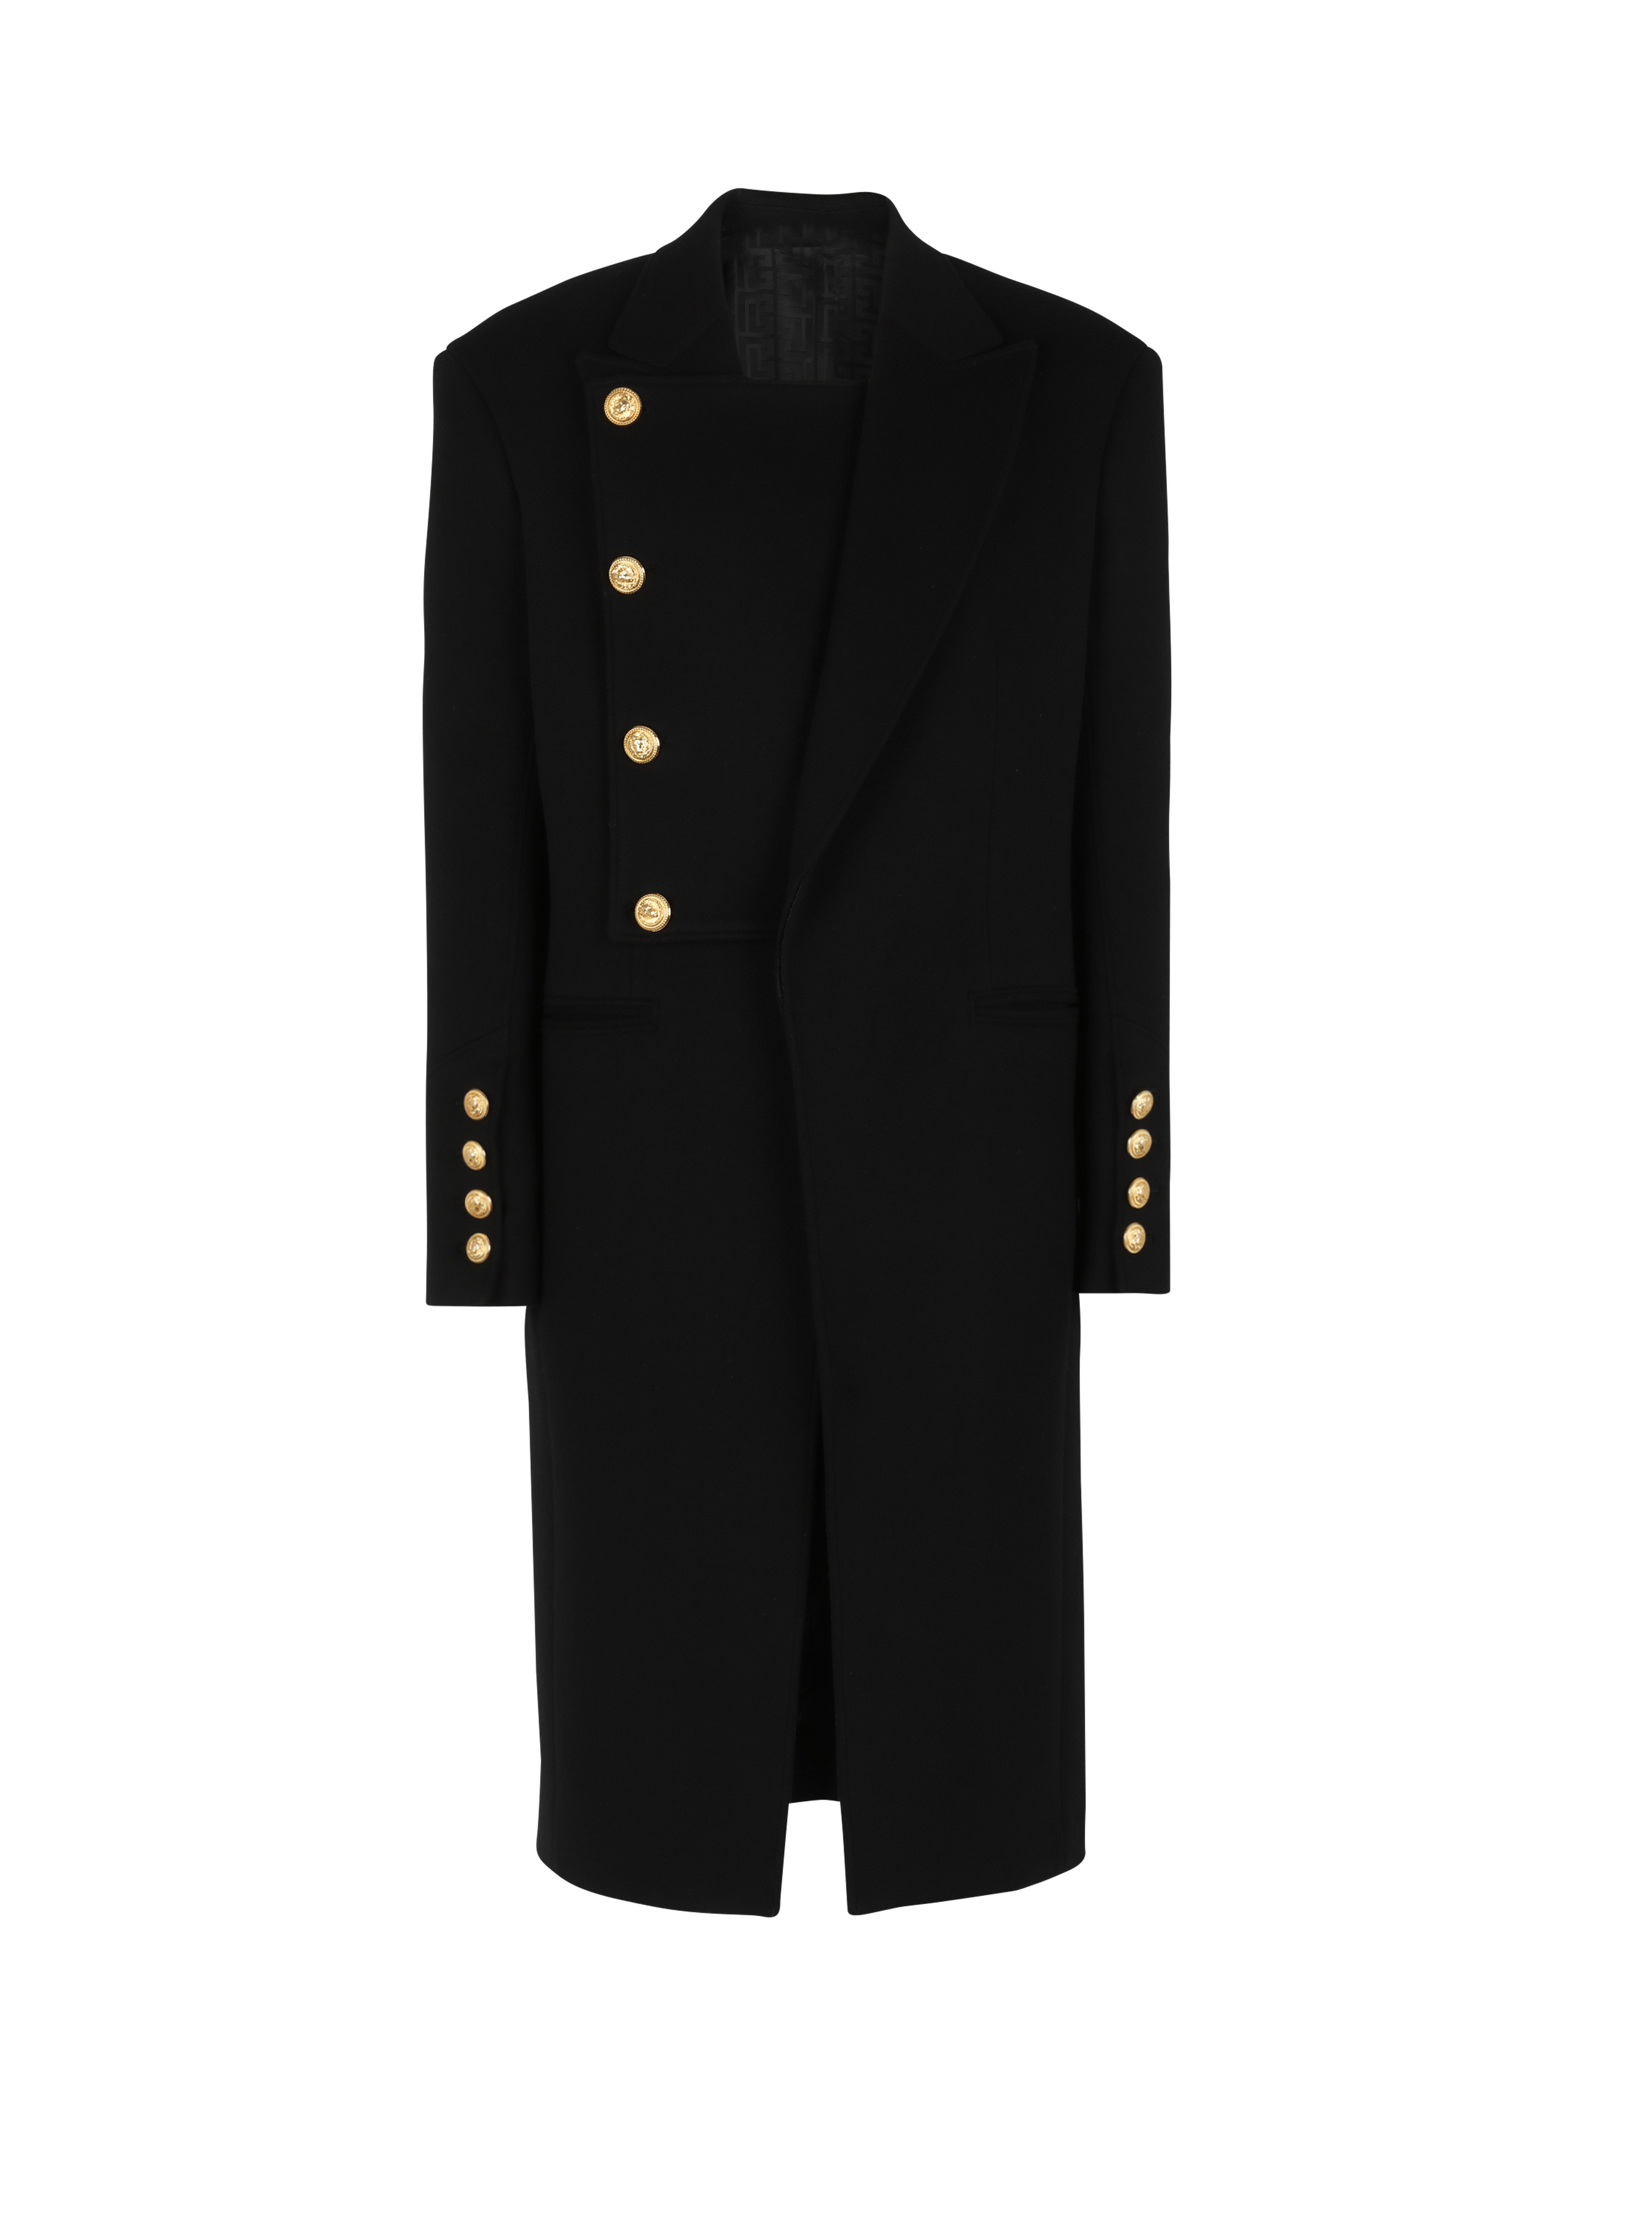 유니섹스 - 탈부착 가능한 인서트 재킷 디테일 포 버튼 울 코트, 검정색